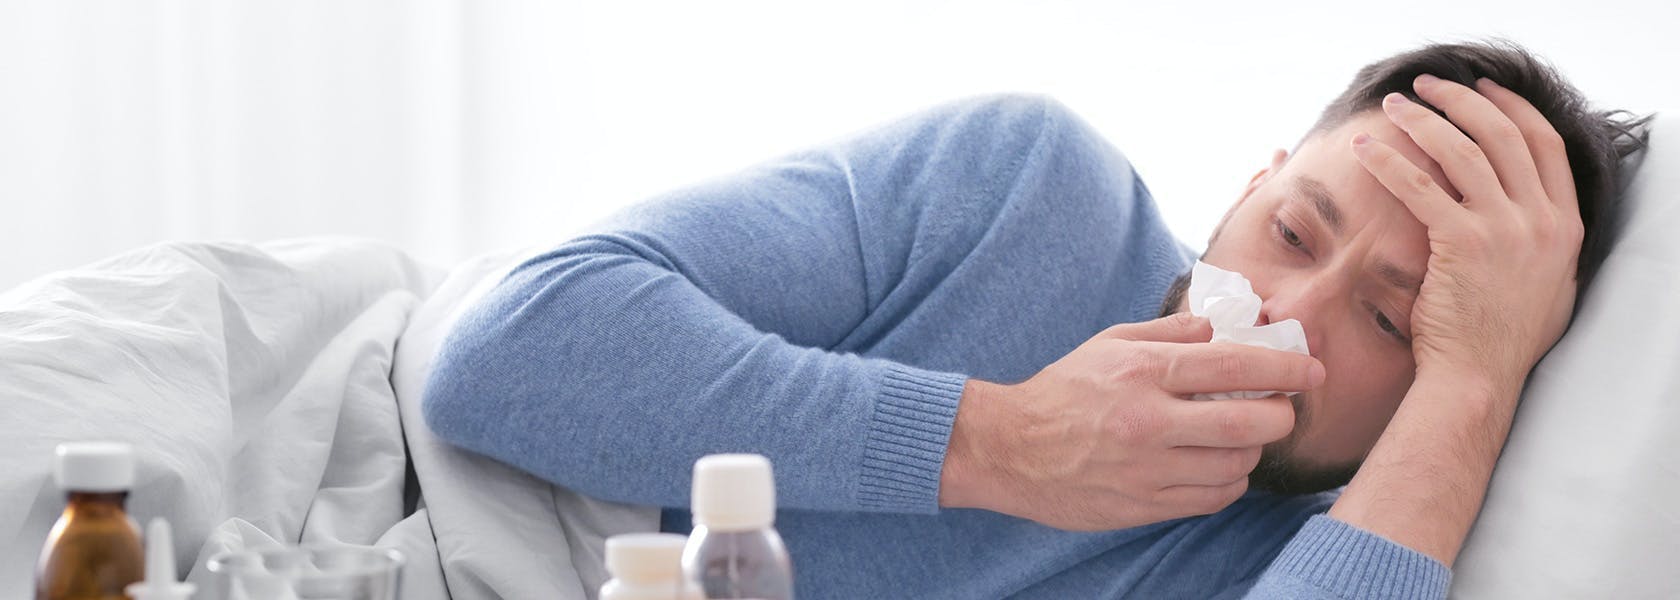 Hombre acostado en su cama con síntomas de gripe y limpiando su nariz. 